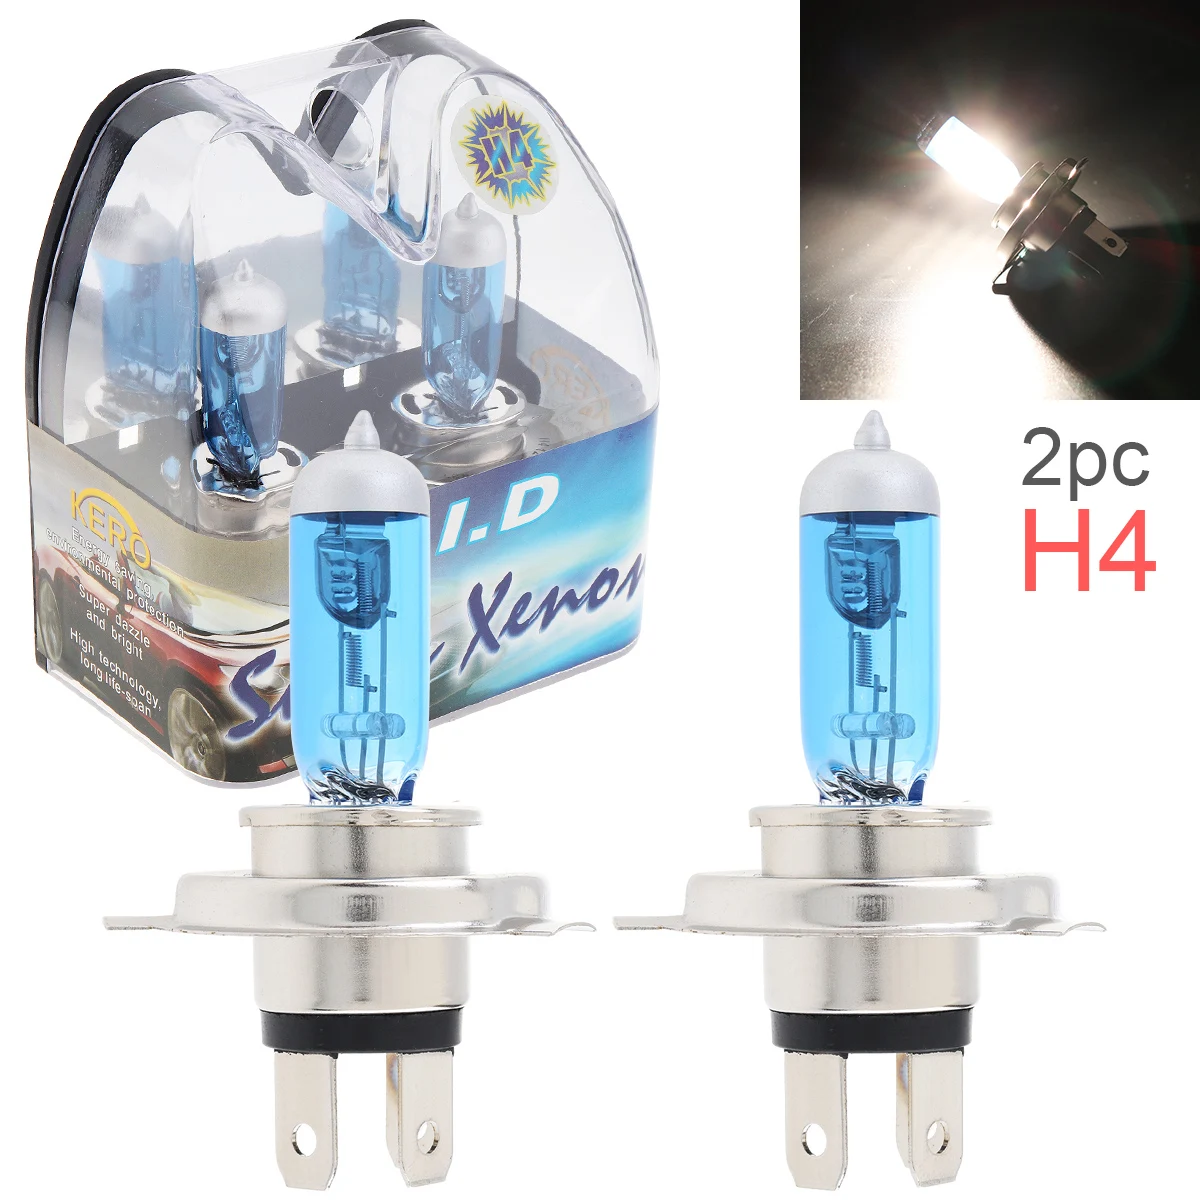 2pcs 12V H4 60/55W 6000K White Light Super Bright Car Xenon Halogen Lamp Auto Front Headlight Fog Bulb